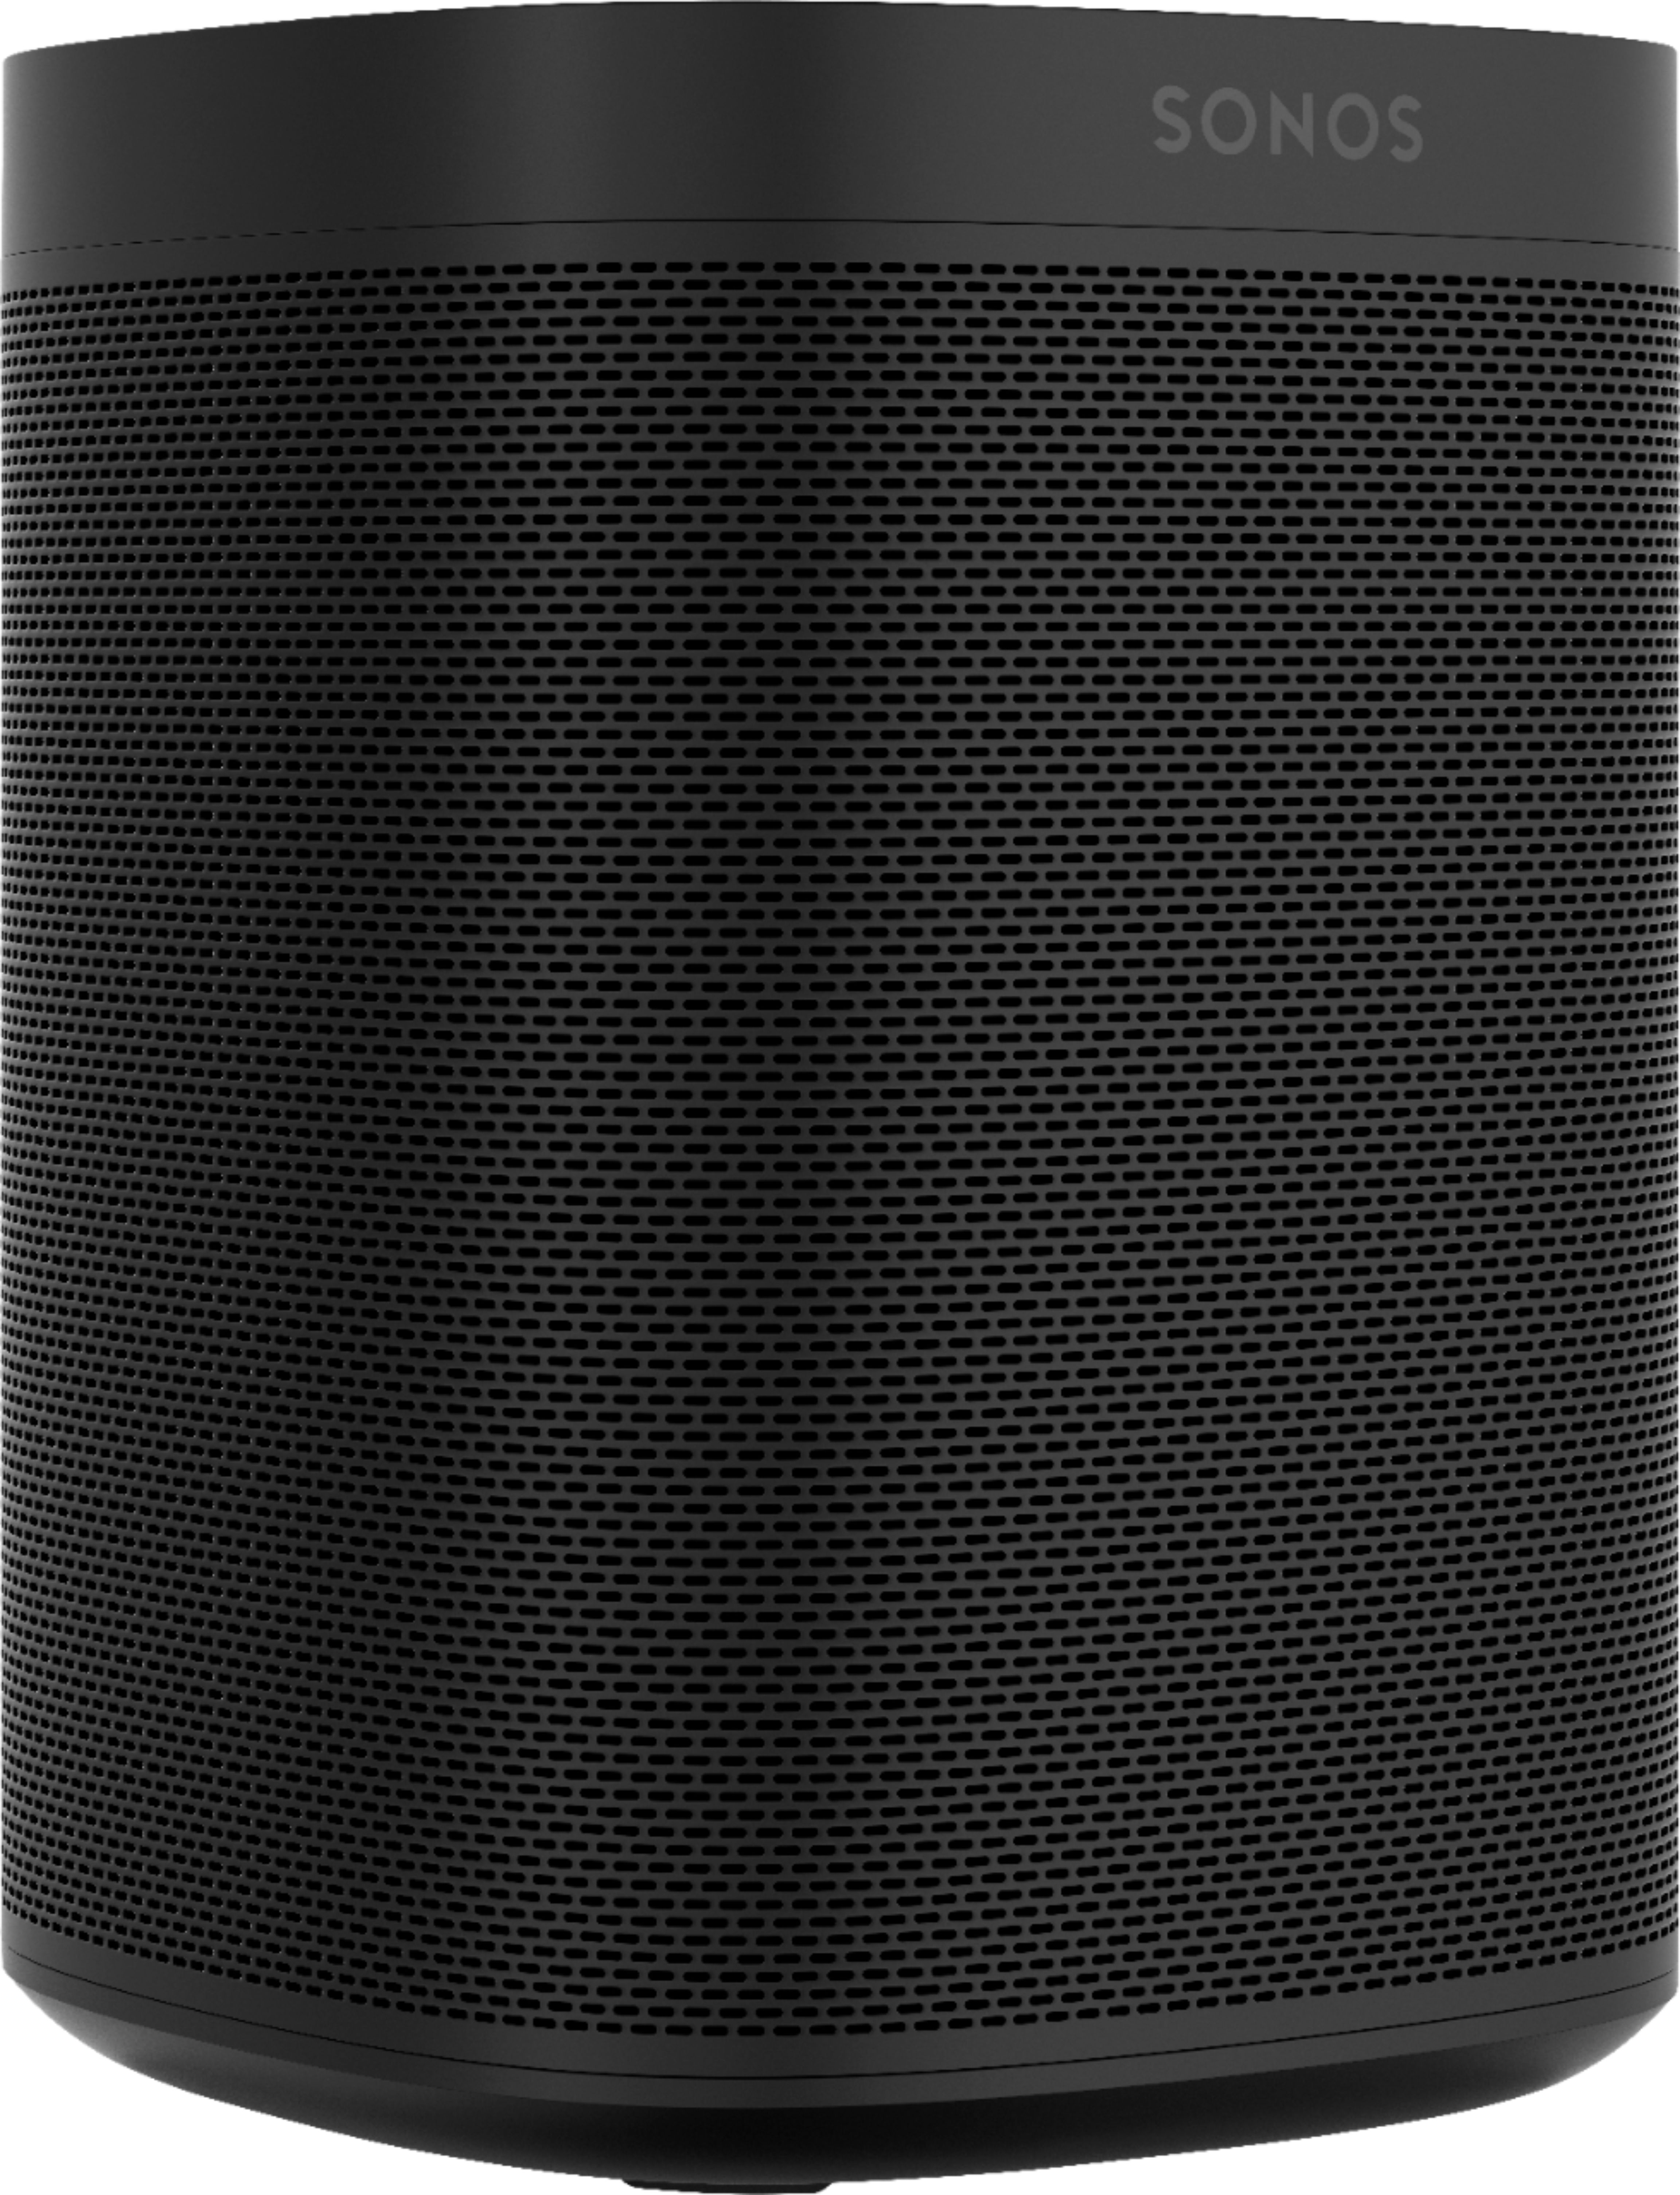 Konkurrencedygtige forår få øje på Sonos One SL Wireless Smart Speaker Black ONESLUS1BLK - Best Buy